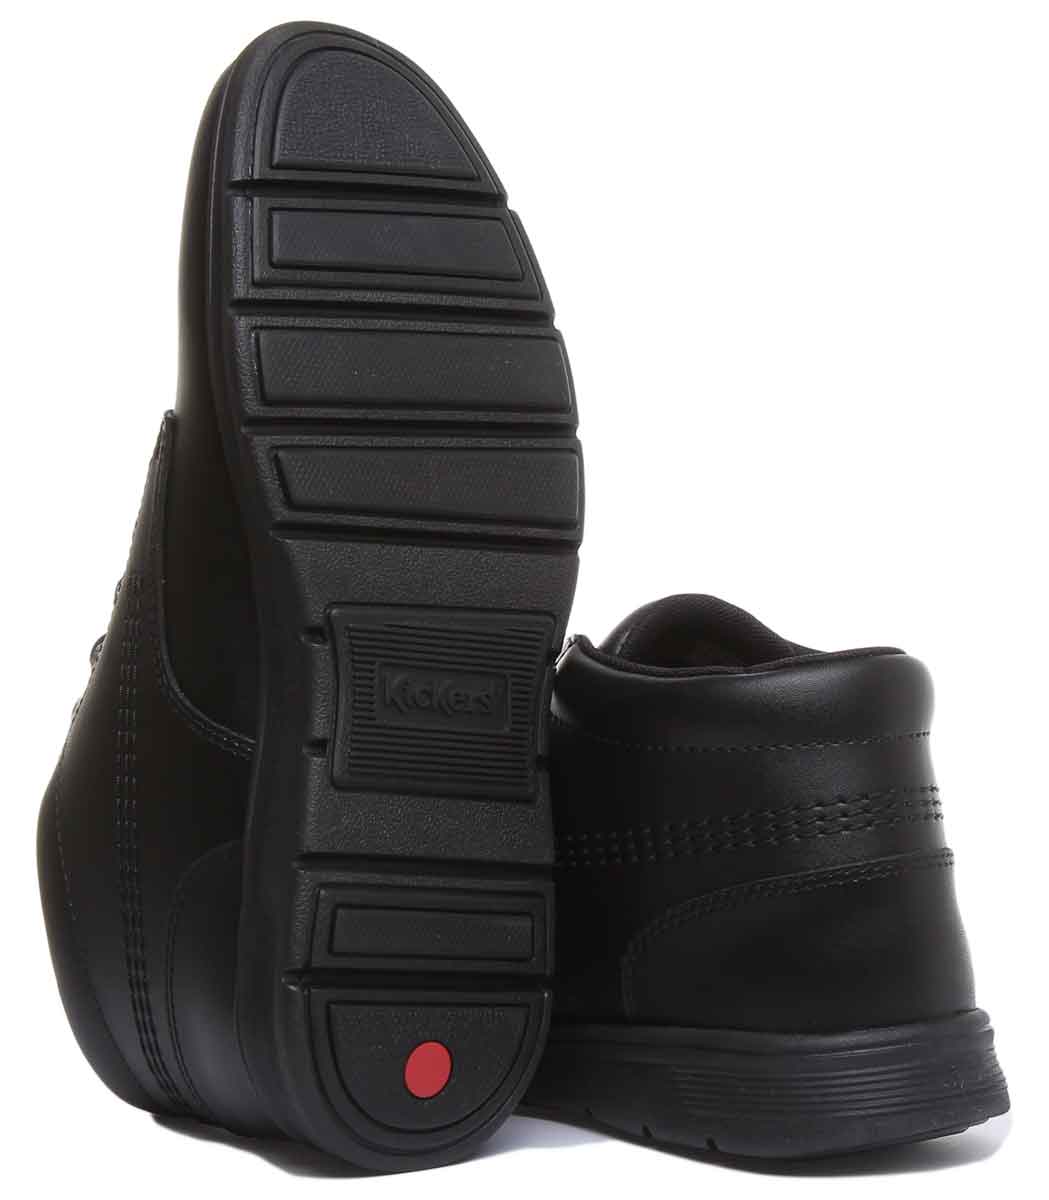 Kickers Kelland Lace Boot In Black in Teen UK Size 3 - 6